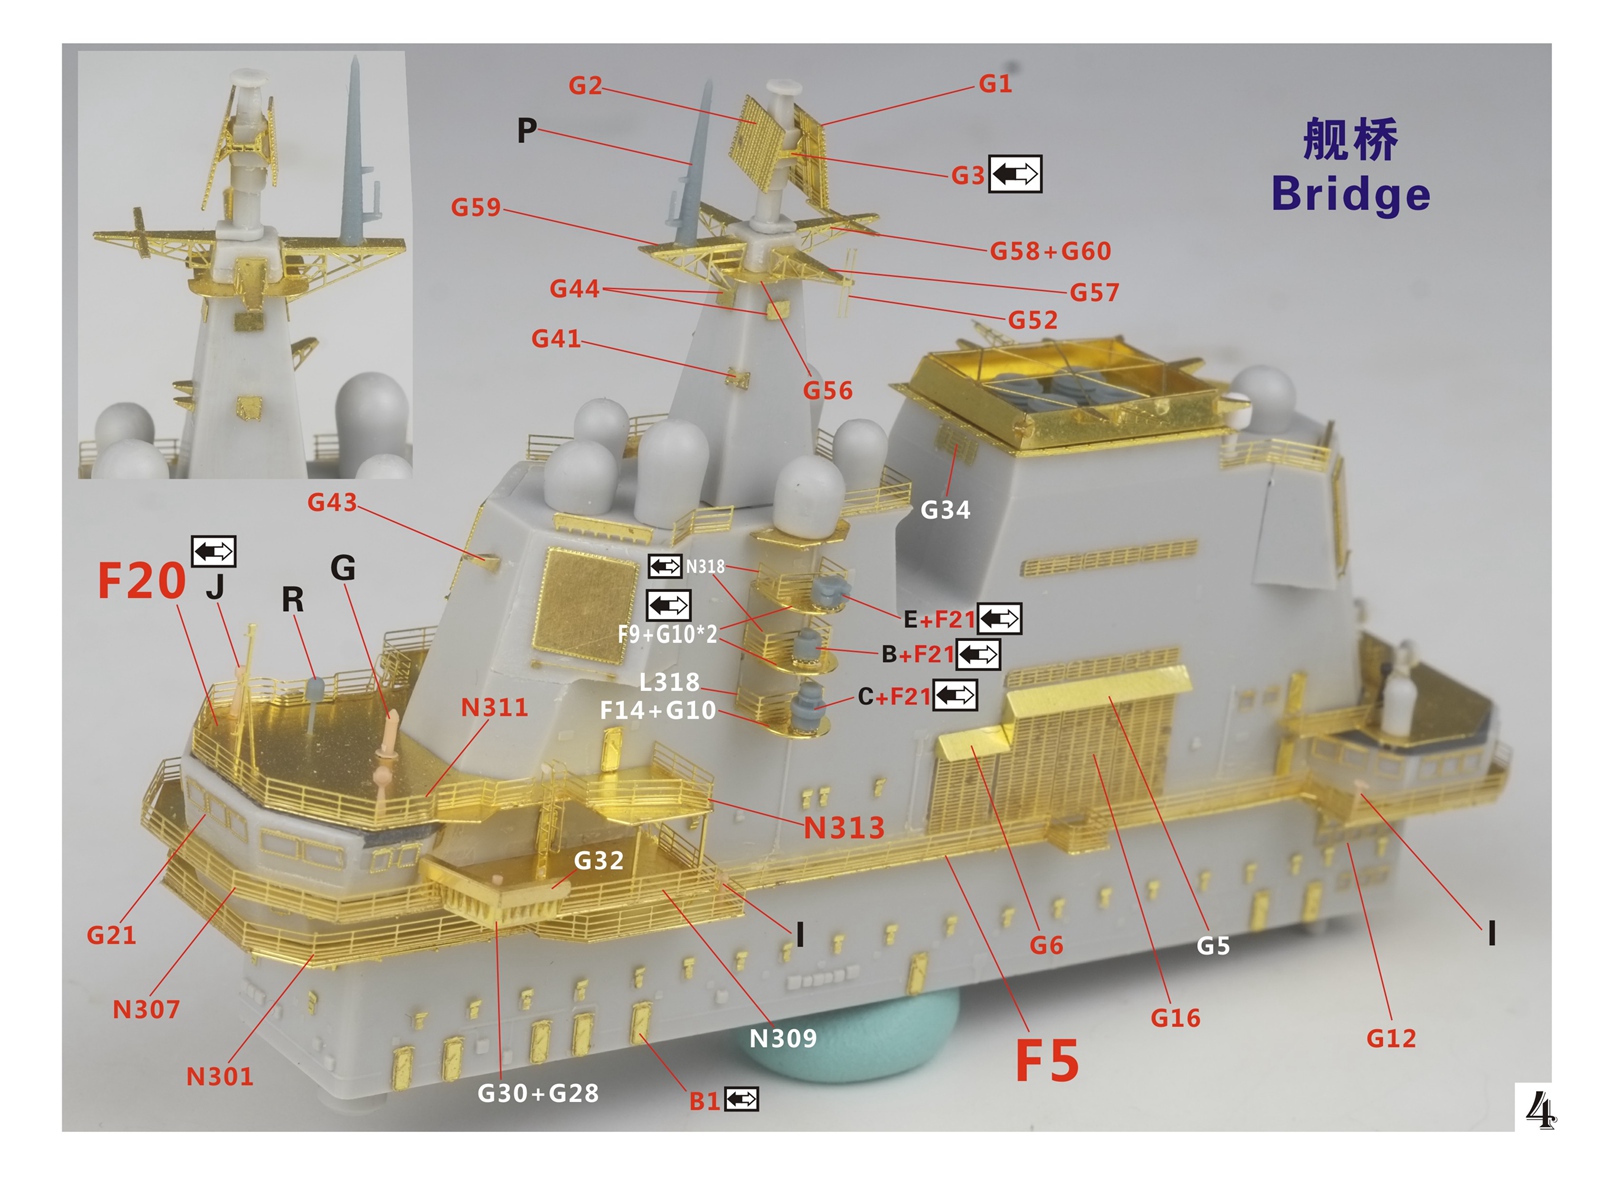 1/700 现代中国海军山东号航空母舰超级改造套件(配Meng PS-006) - 点击图像关闭